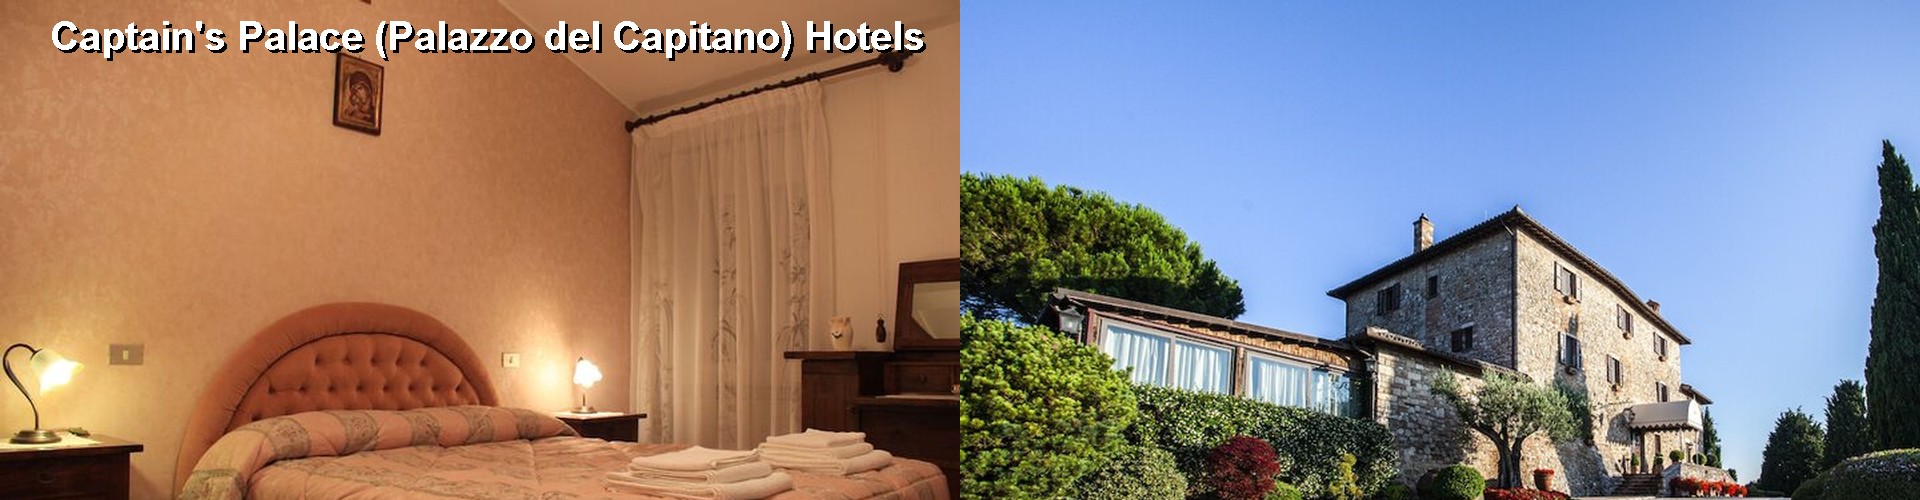 5 Best Hotels near Captain's Palace (Palazzo del Capitano)